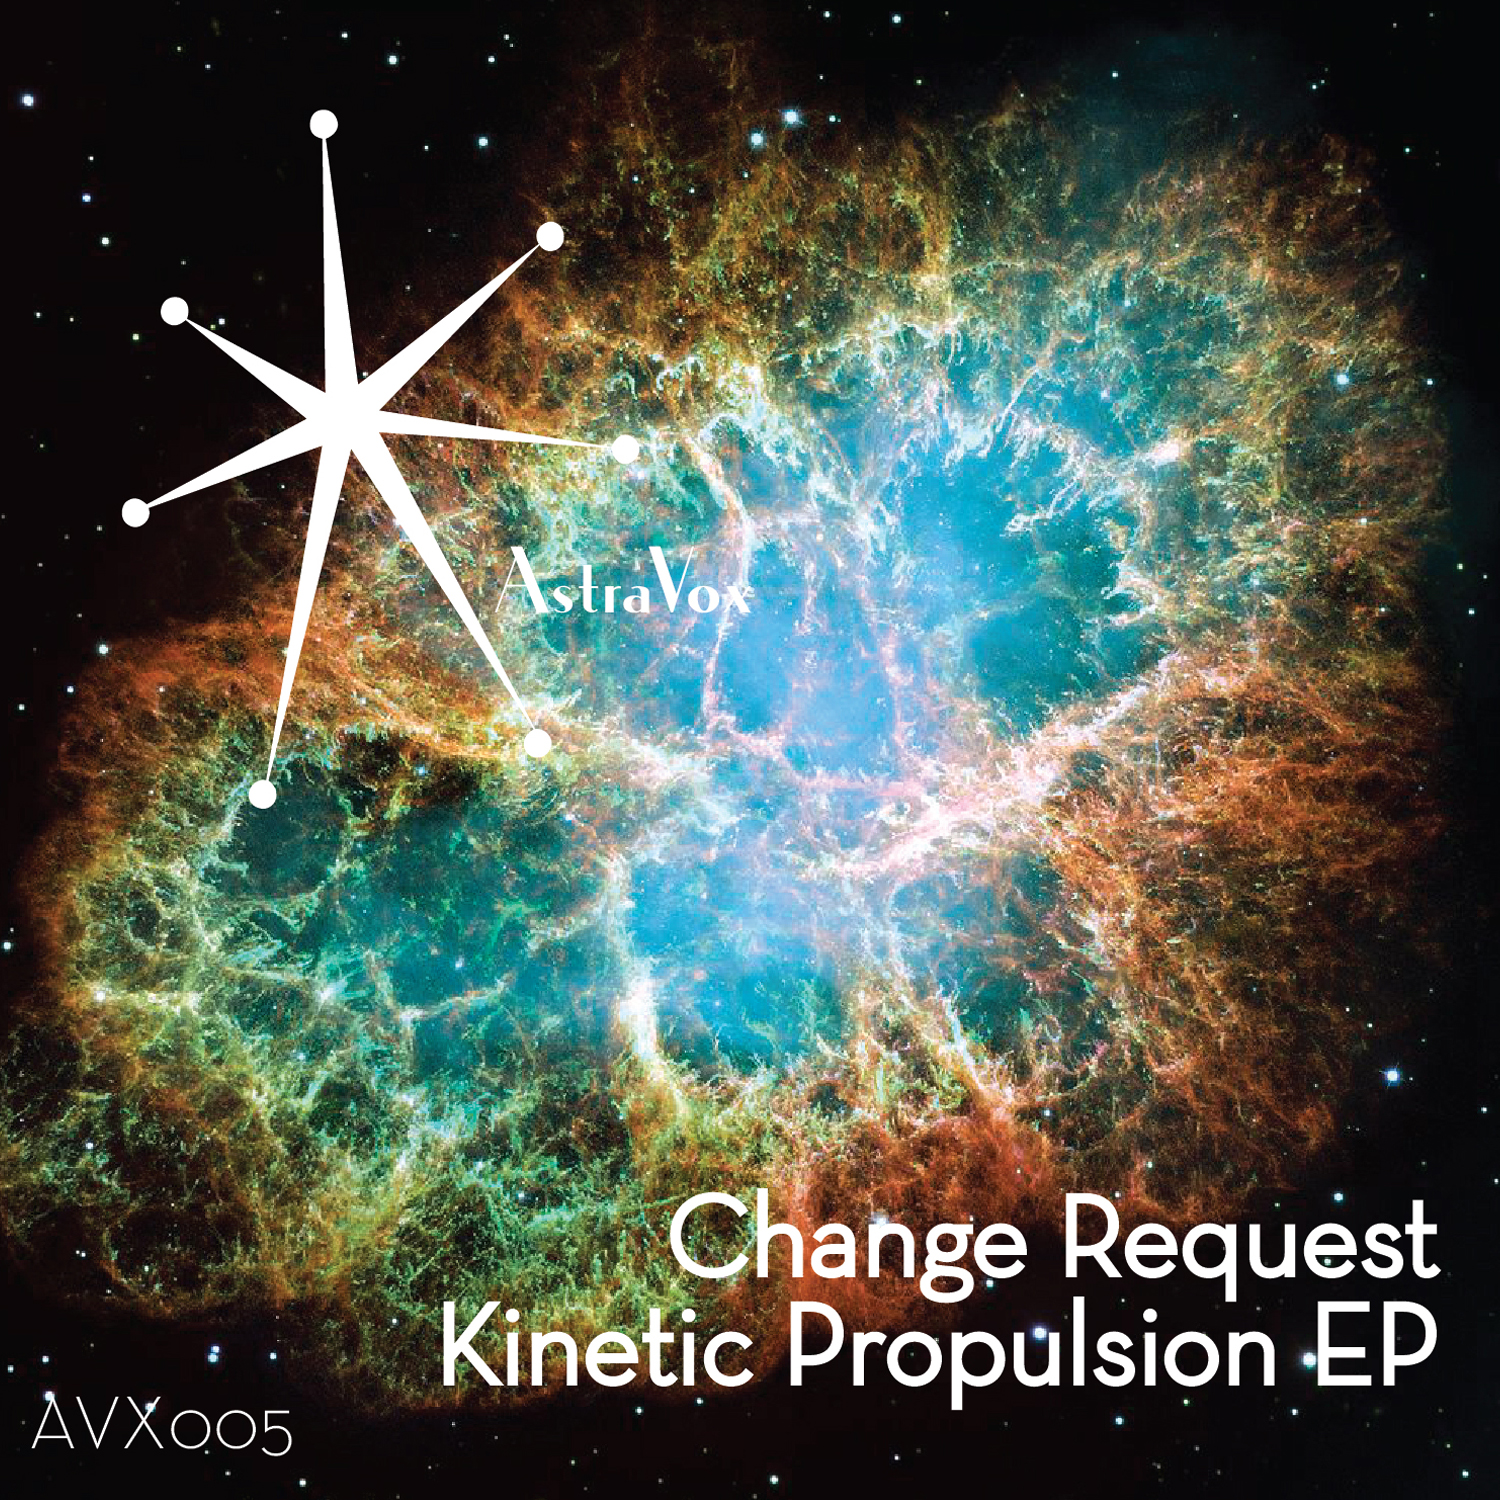 Kinetic Propulsion EP